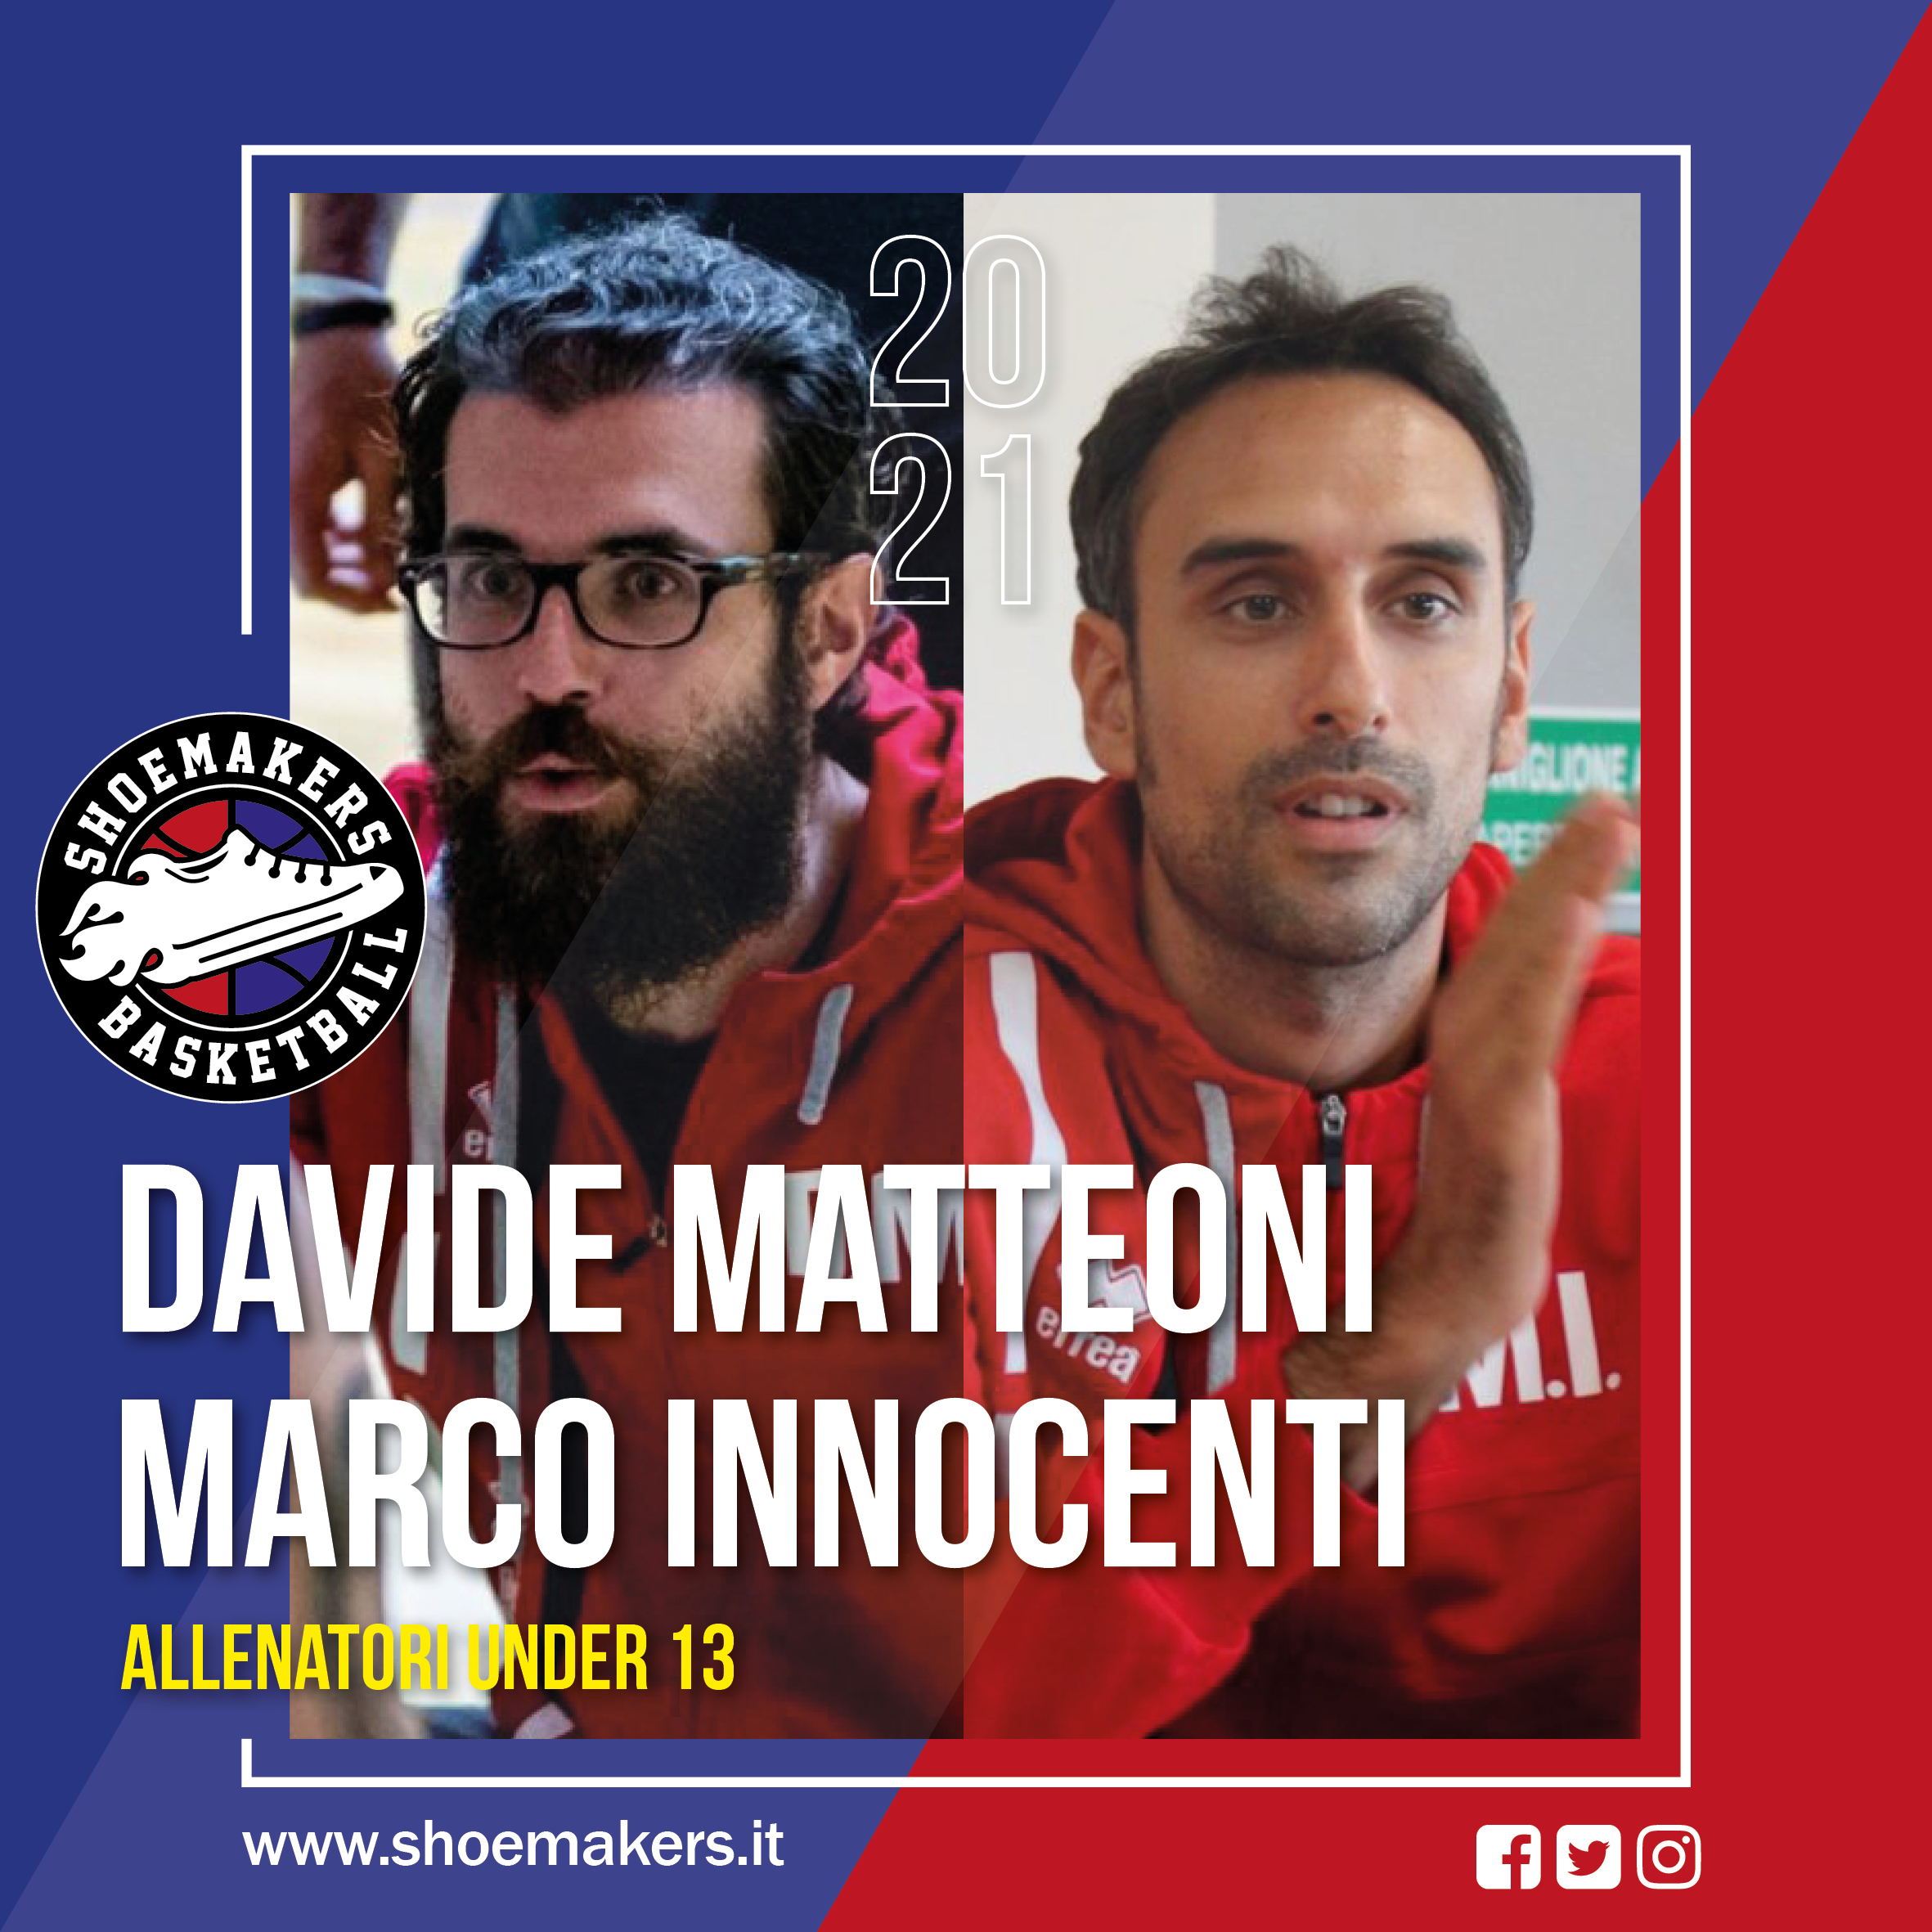 Davide Matteoni e Marco Innocenti